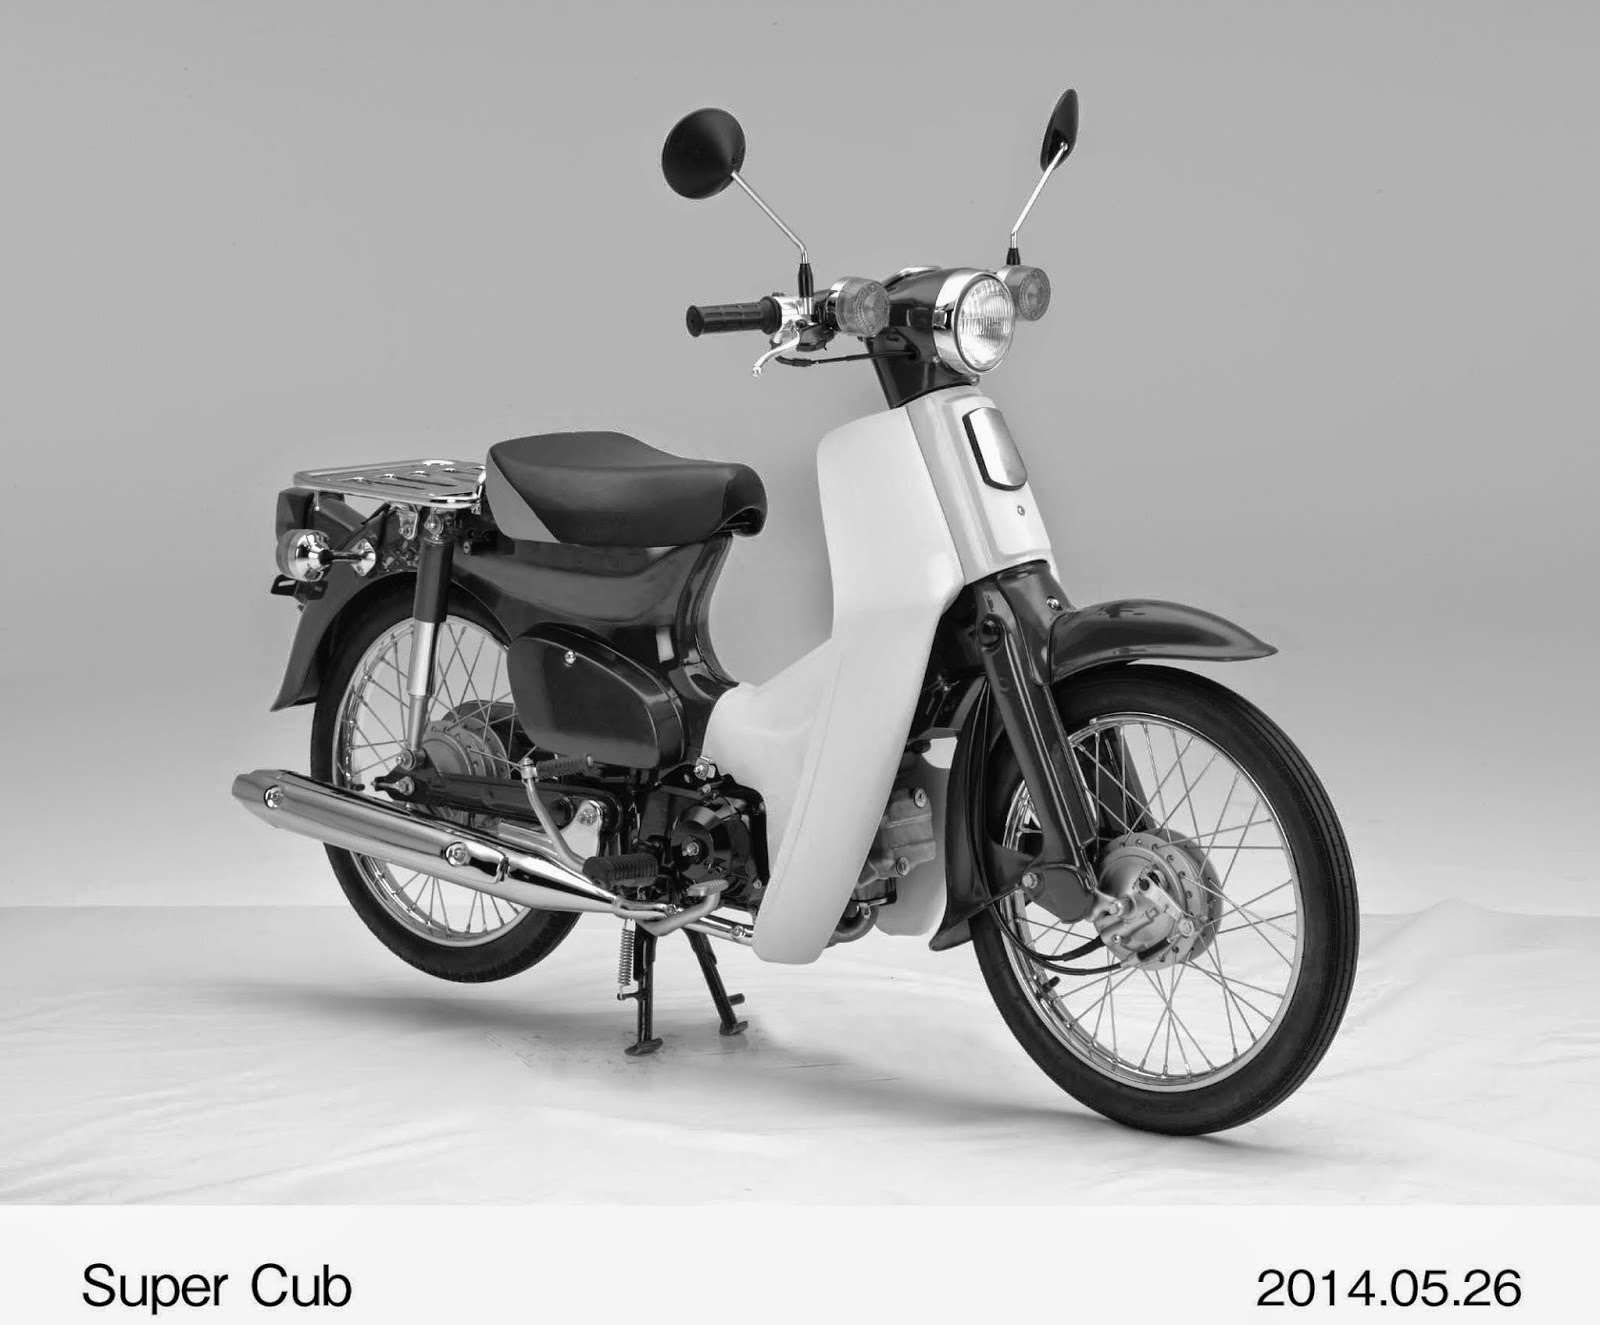 Το Ιαπωνικό Γραφείο Ευρεσιτεχνιών κατοχύρωσε τρισδιάστατη πατέντα για το σχήμα του Super Cub, του δημοφιλούς και διαχρονικού ‘παπιού’ της Honda - Φωτογραφία 1